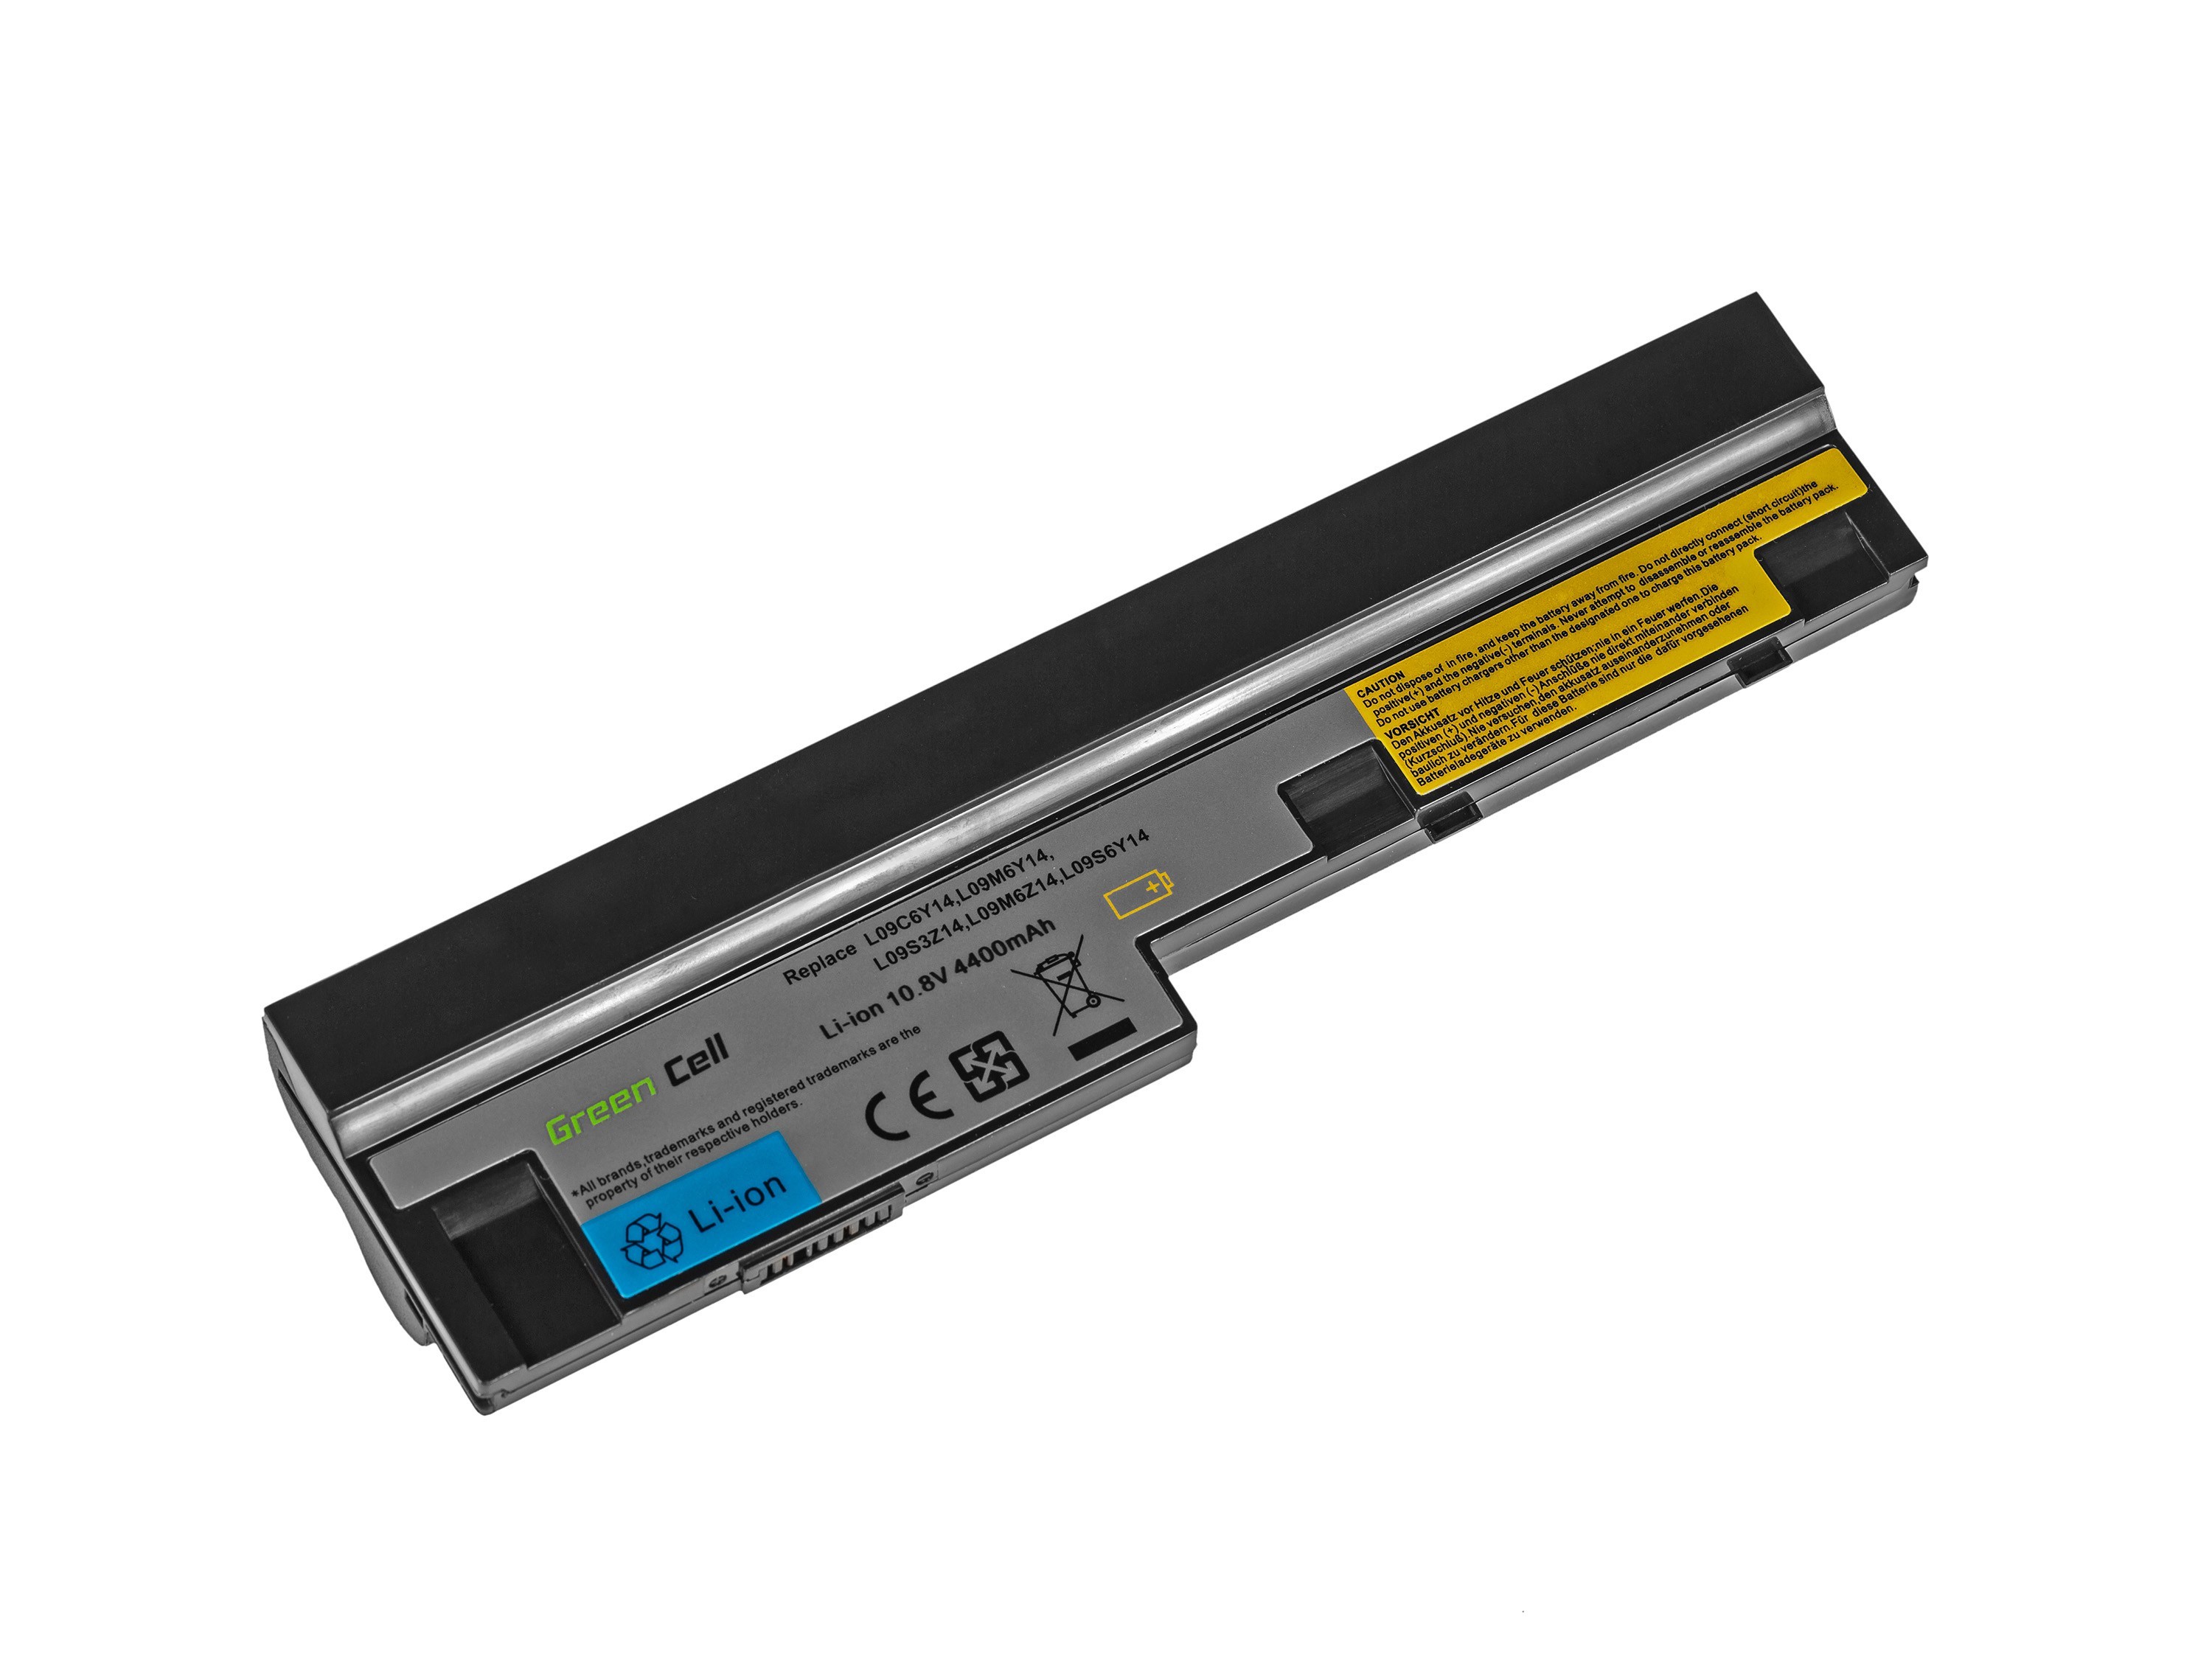 Batterij voor Lenovo IdeaPad S10-3 S10-3c S10-3s S100 S205 U160 U165 / 11,1V 4400mAh.